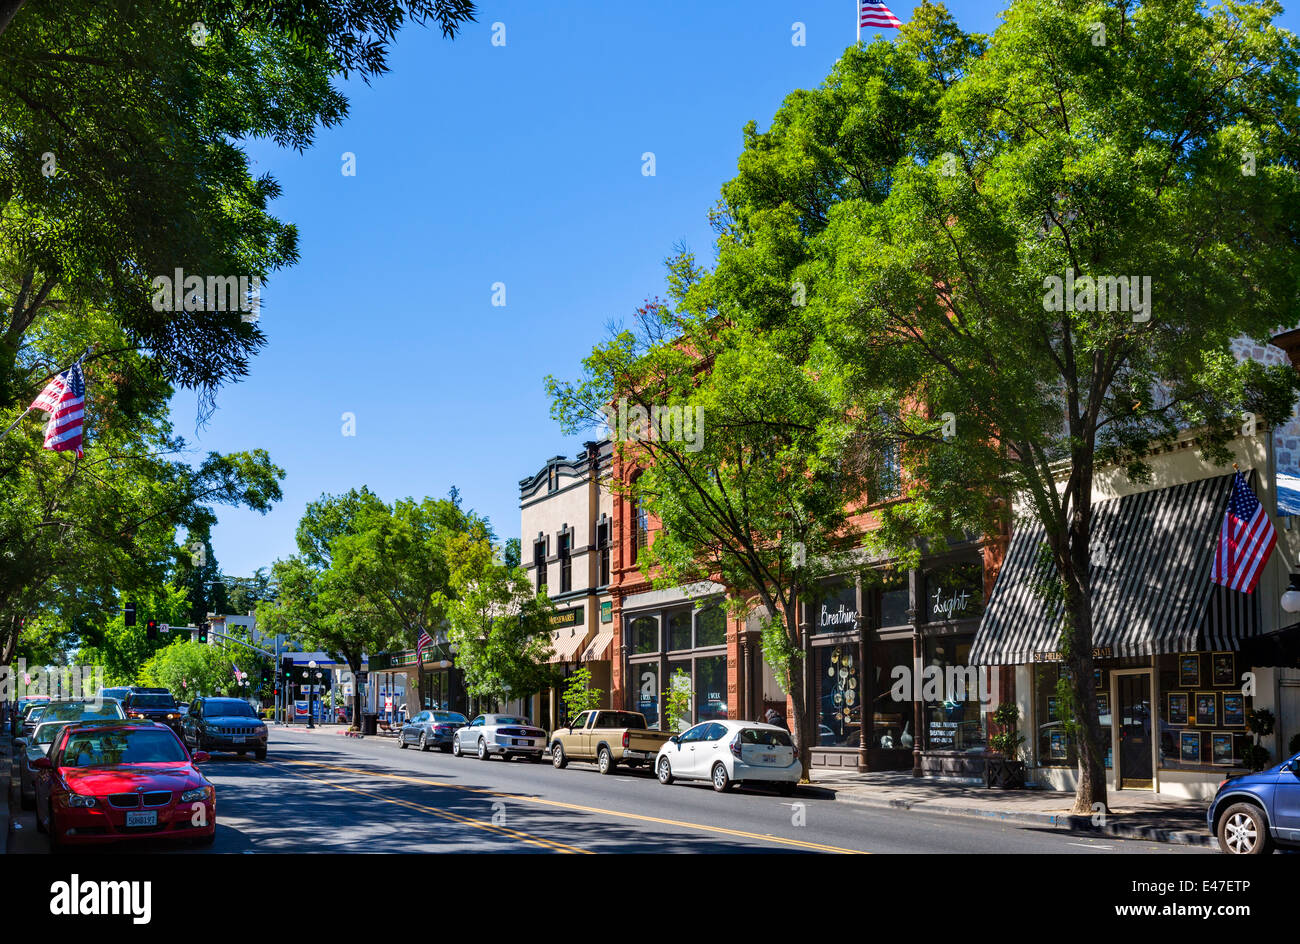 Main Street, Saint Helena, Napa Valley, Wine Country, California, USA Stock Photo